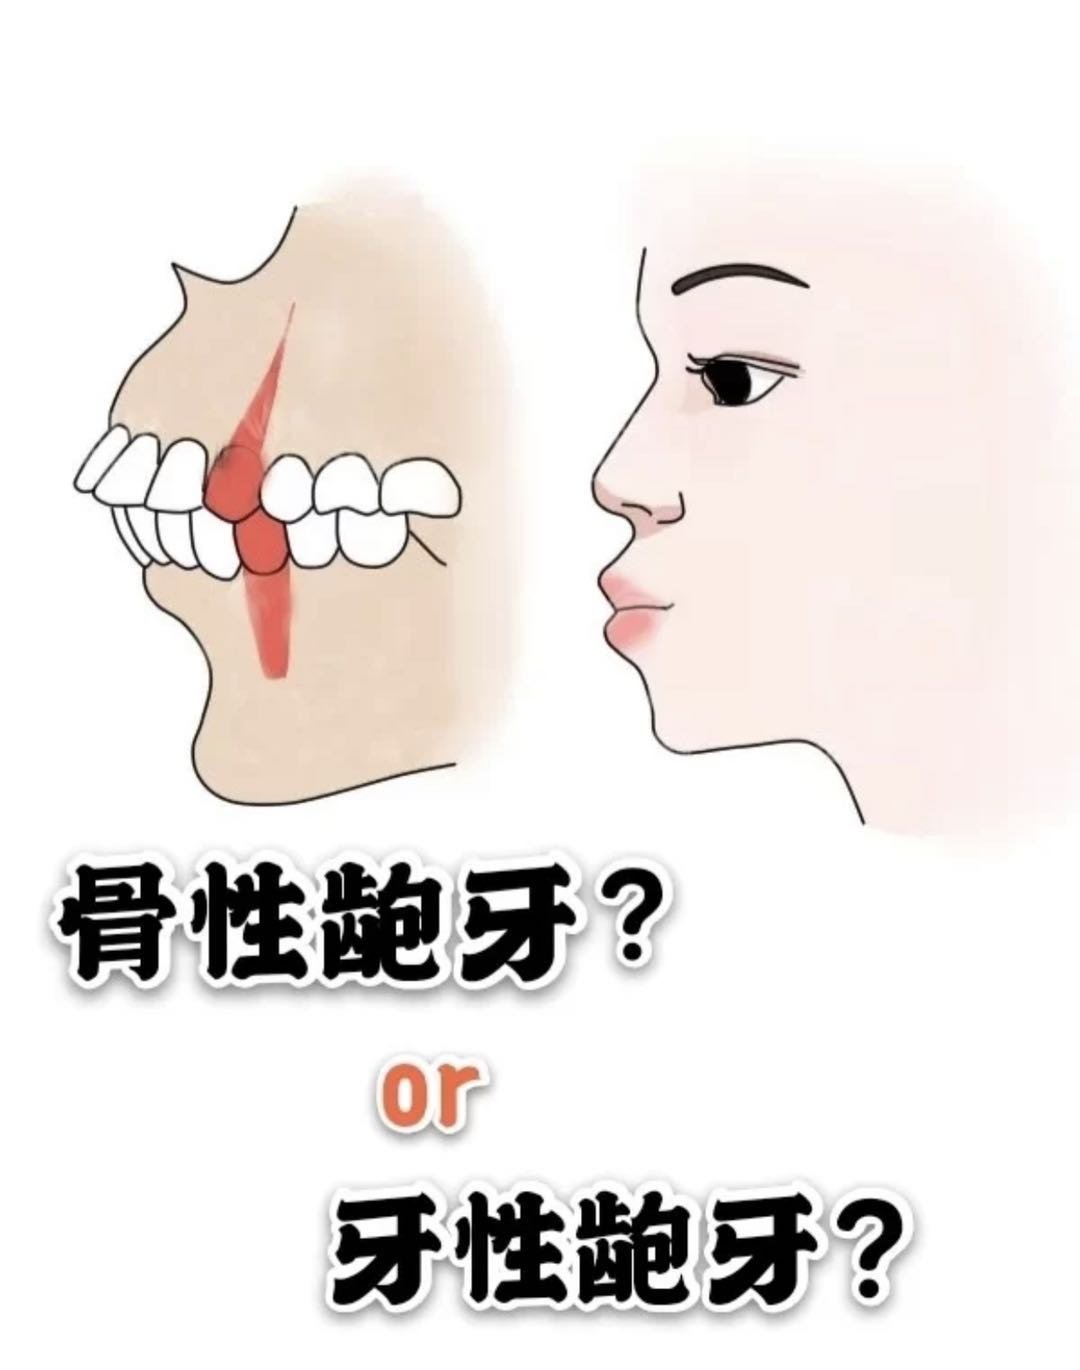 如何区分骨性龅牙or牙性龅牙?